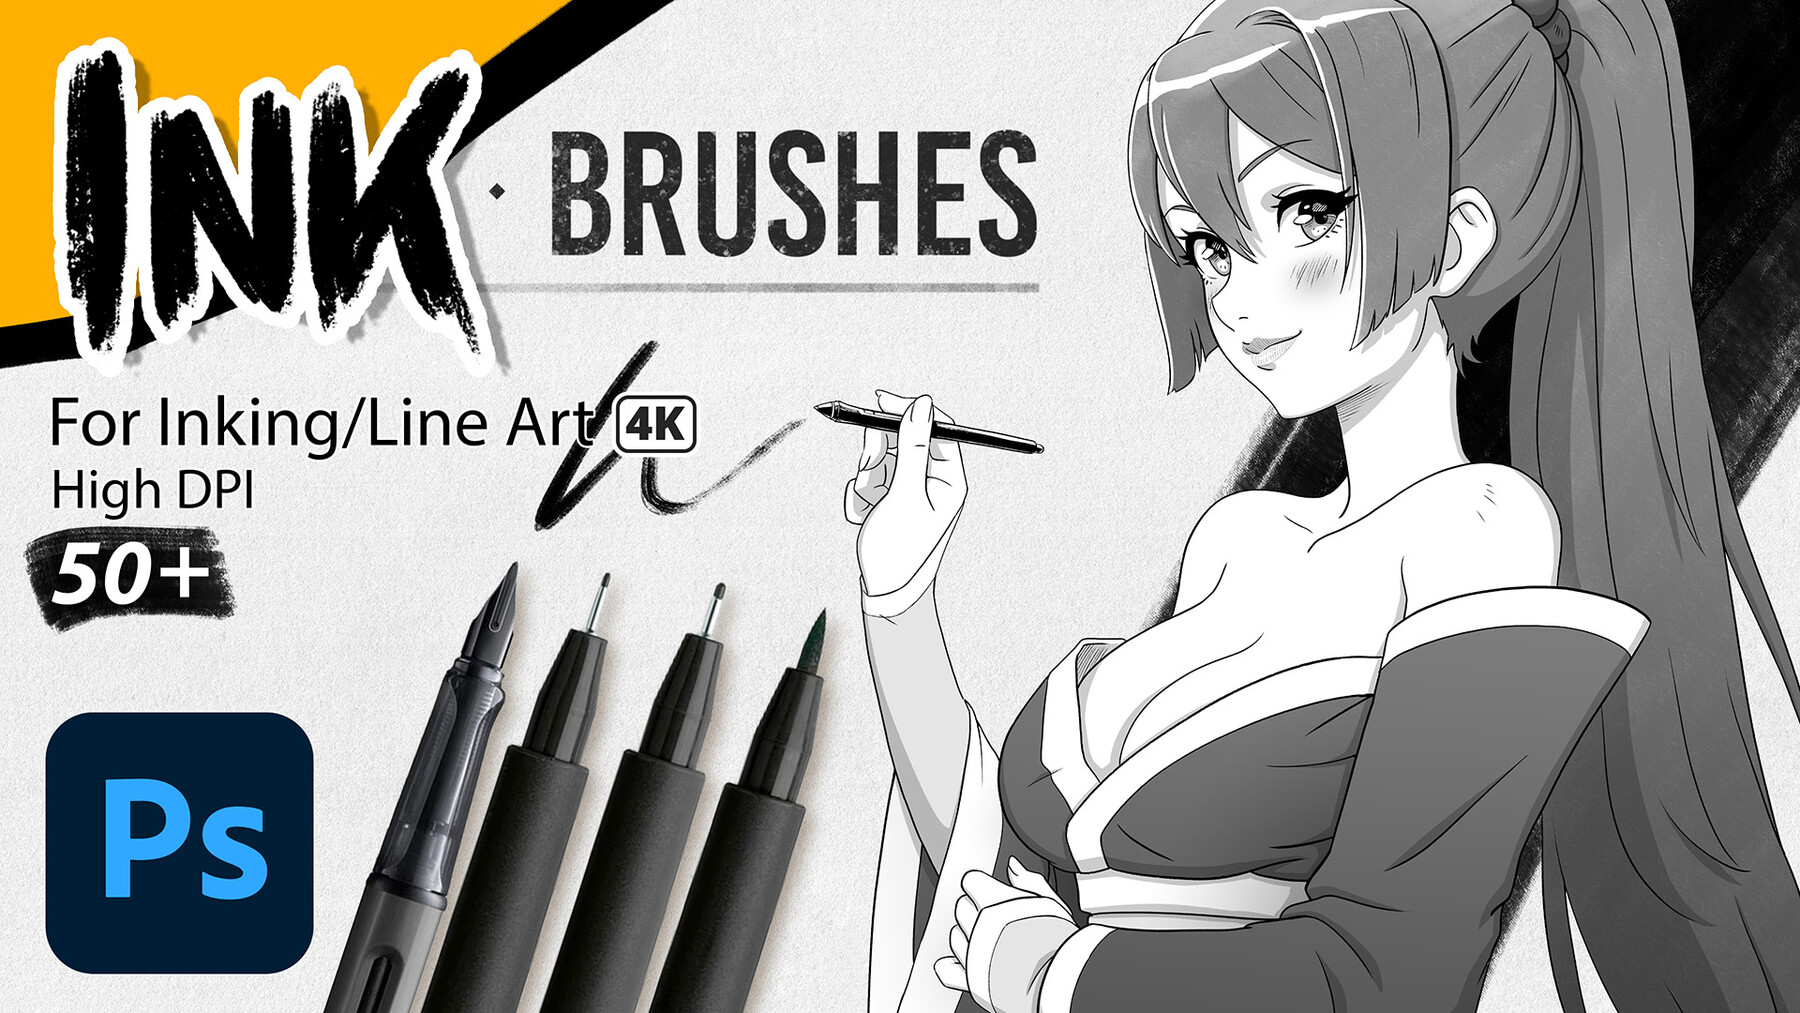 Share 152+ anime brushes photoshop latest - awesomeenglish.edu.vn